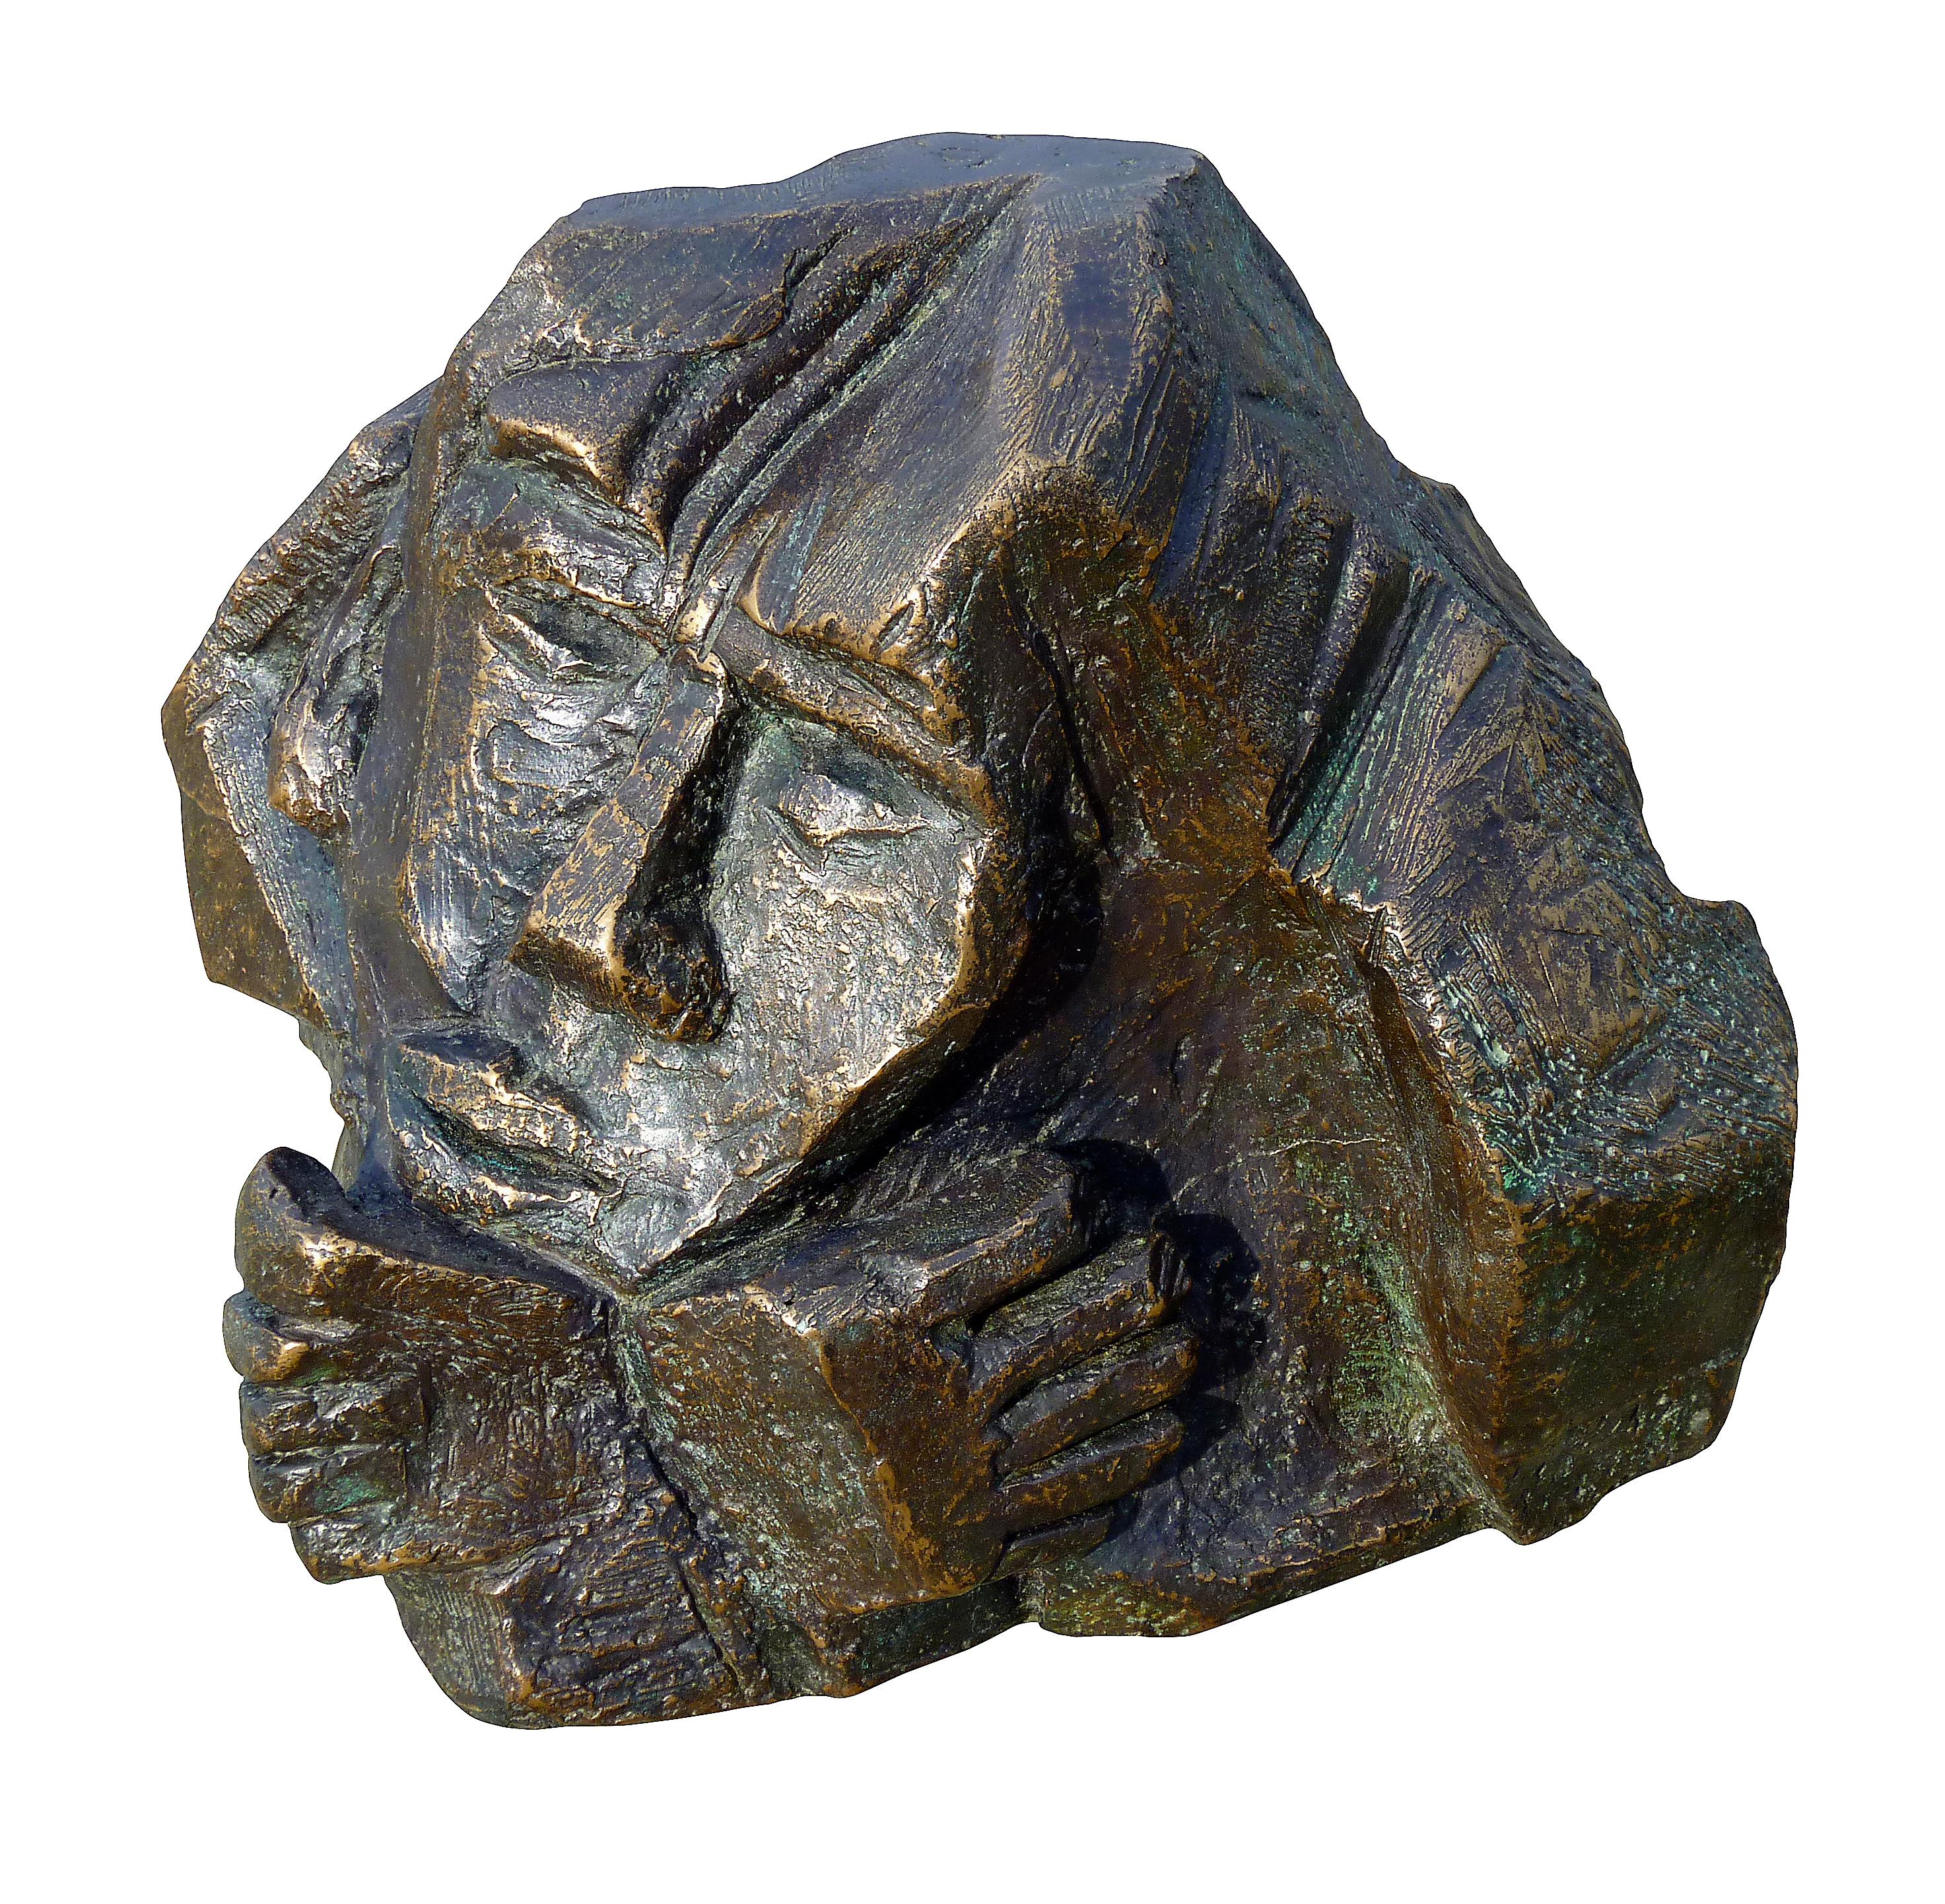 Emmanuelle Vroelant Figurative Sculpture - "Doubt" figurative sculpture bronze limited at 8 pieces 16x16x16cm 2009